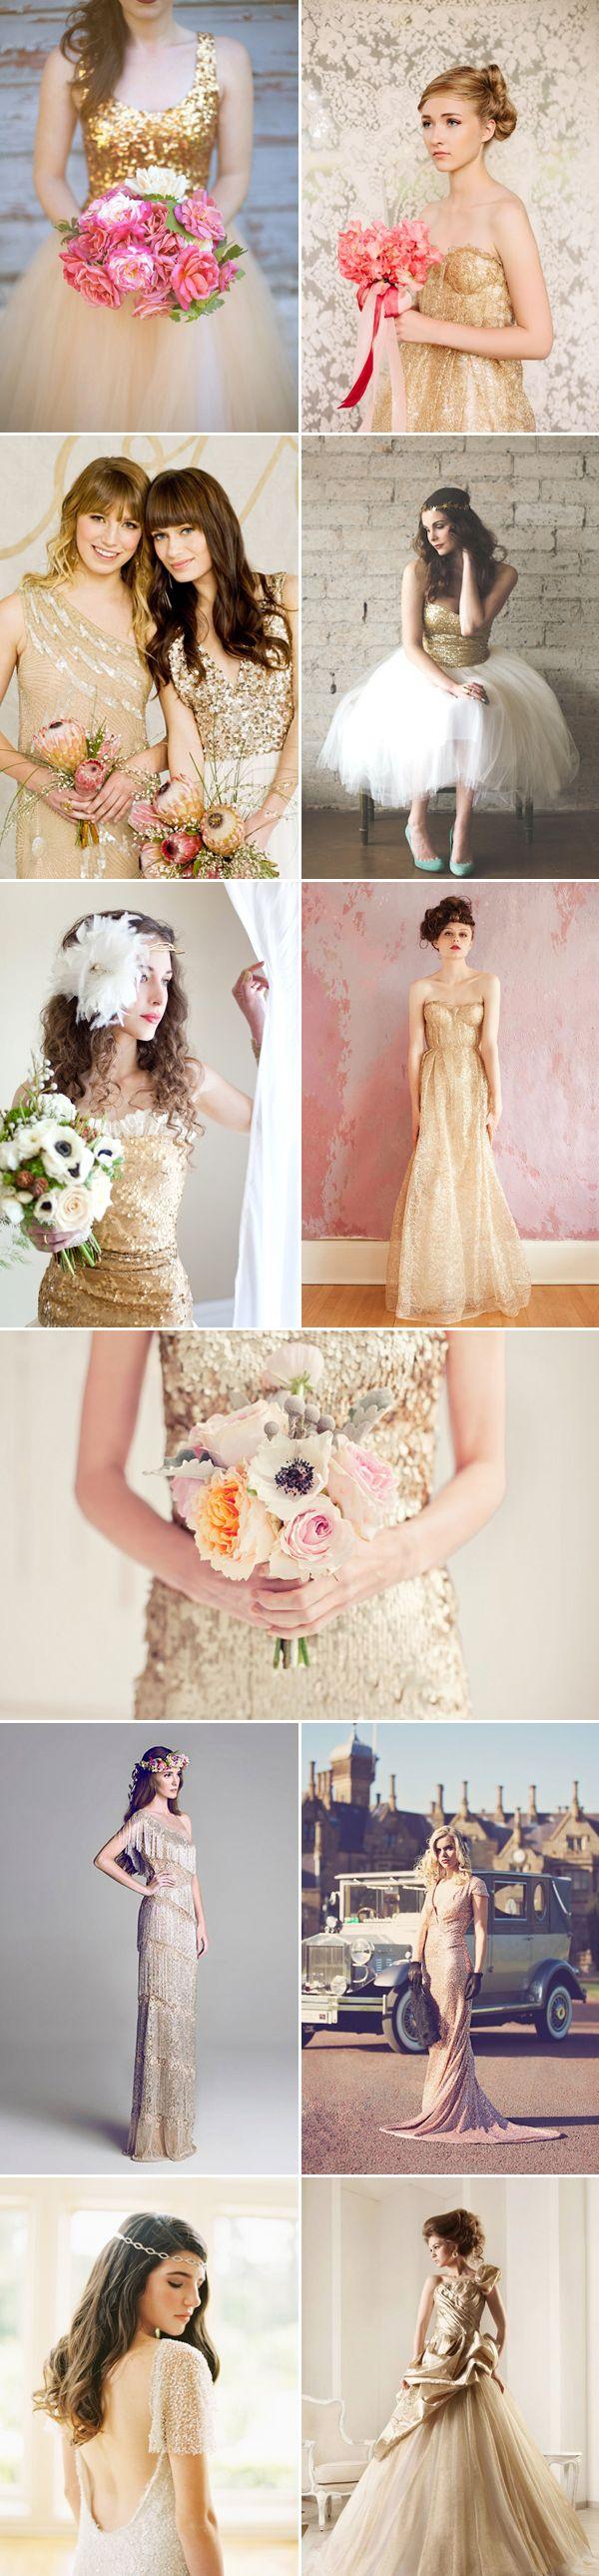 زفاف - 27 Beautiful Colored Wedding Dresses